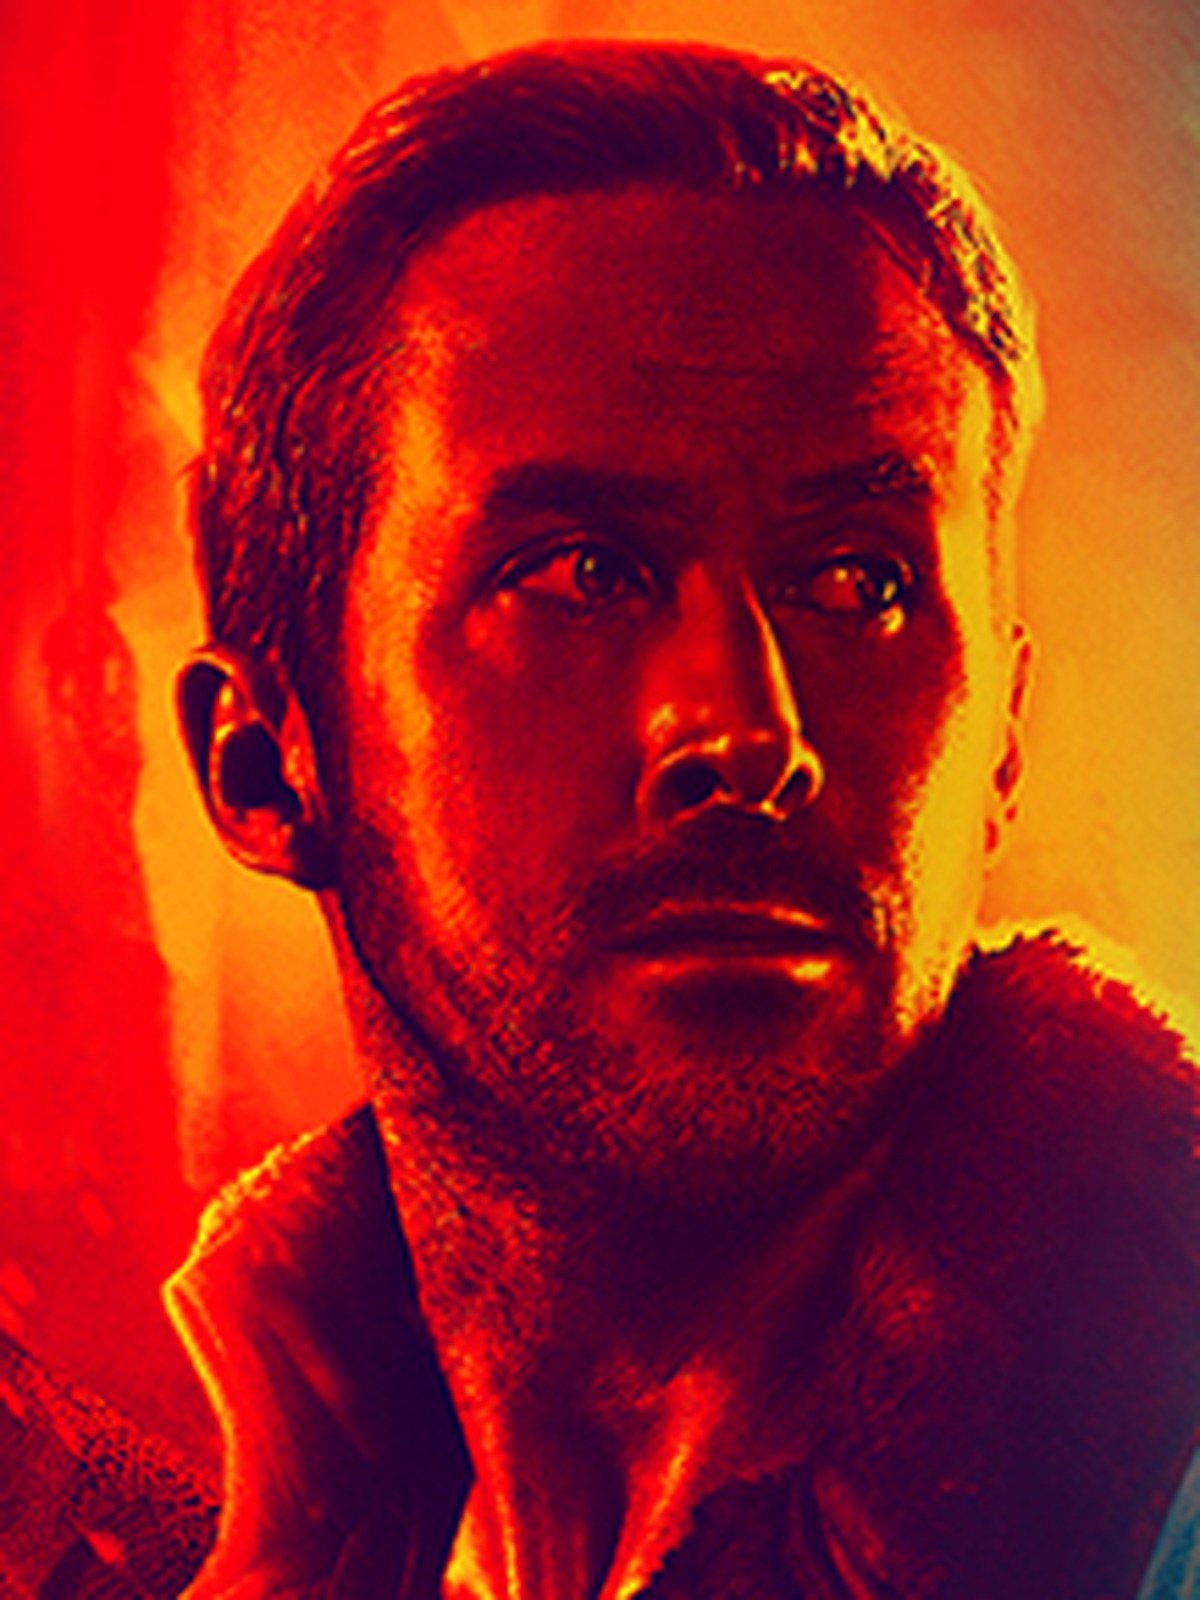 Background Blade Runner 2049 Wallpaper